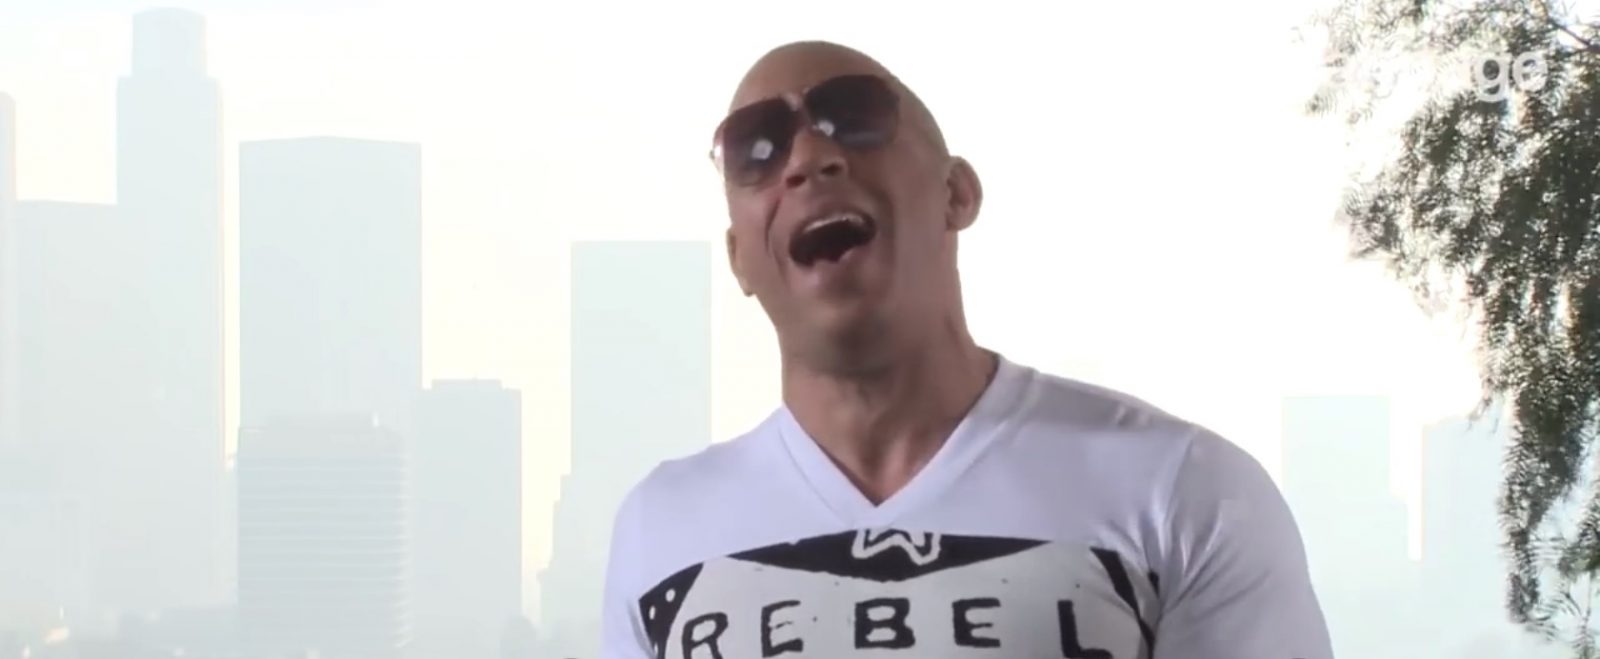 Vin Diesel pjeva “See you again” Paul Walkeru [video], Life.ba